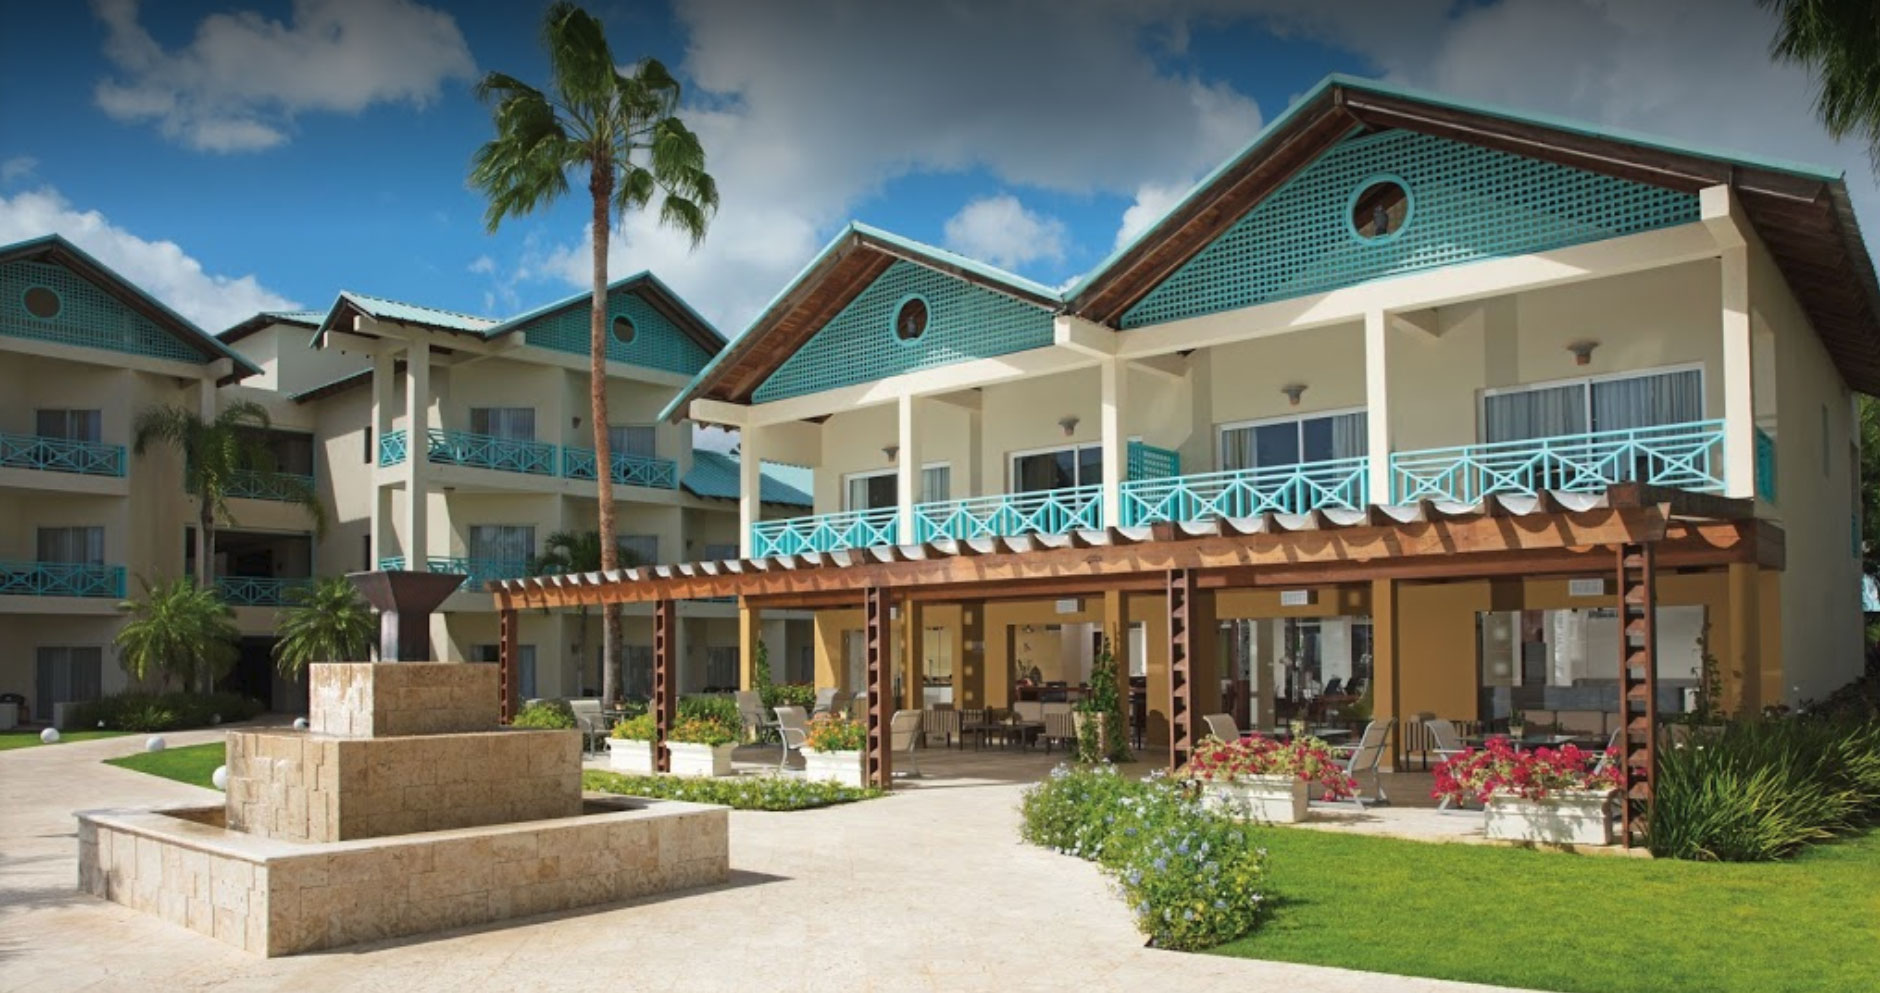 Hilton La Romana, an All-inclusive Family Resort Debuts in the Dominican Republic – Hospitality Net